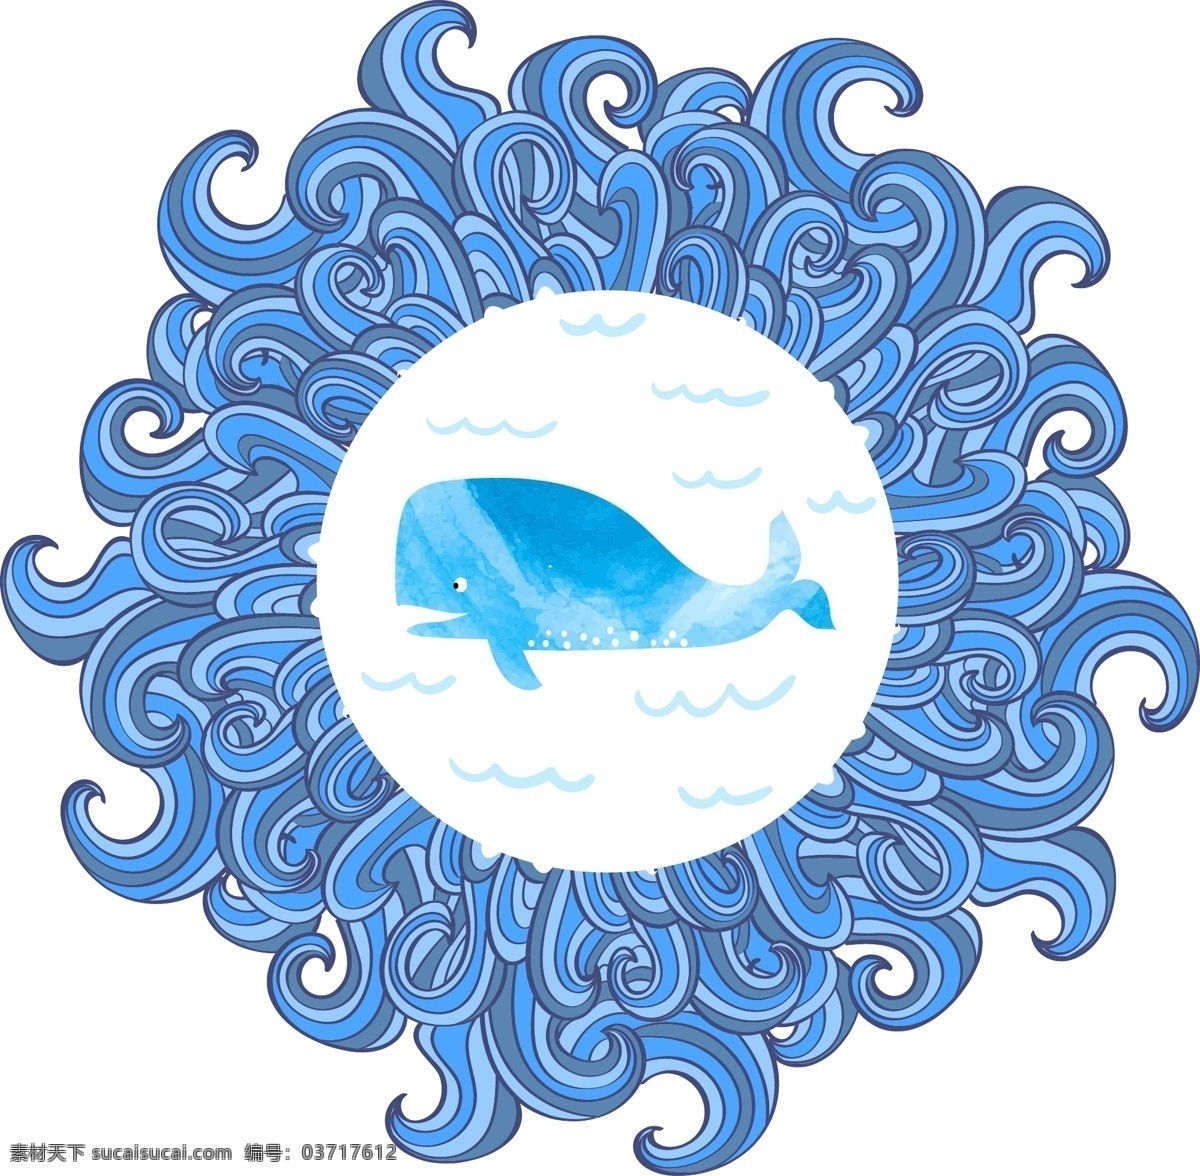 卡通鲸鱼 卡通鲸 水彩画 动物插画 海洋生物 卡通动物 卡通动物漫画 水中生物 生物世界 矢量素材